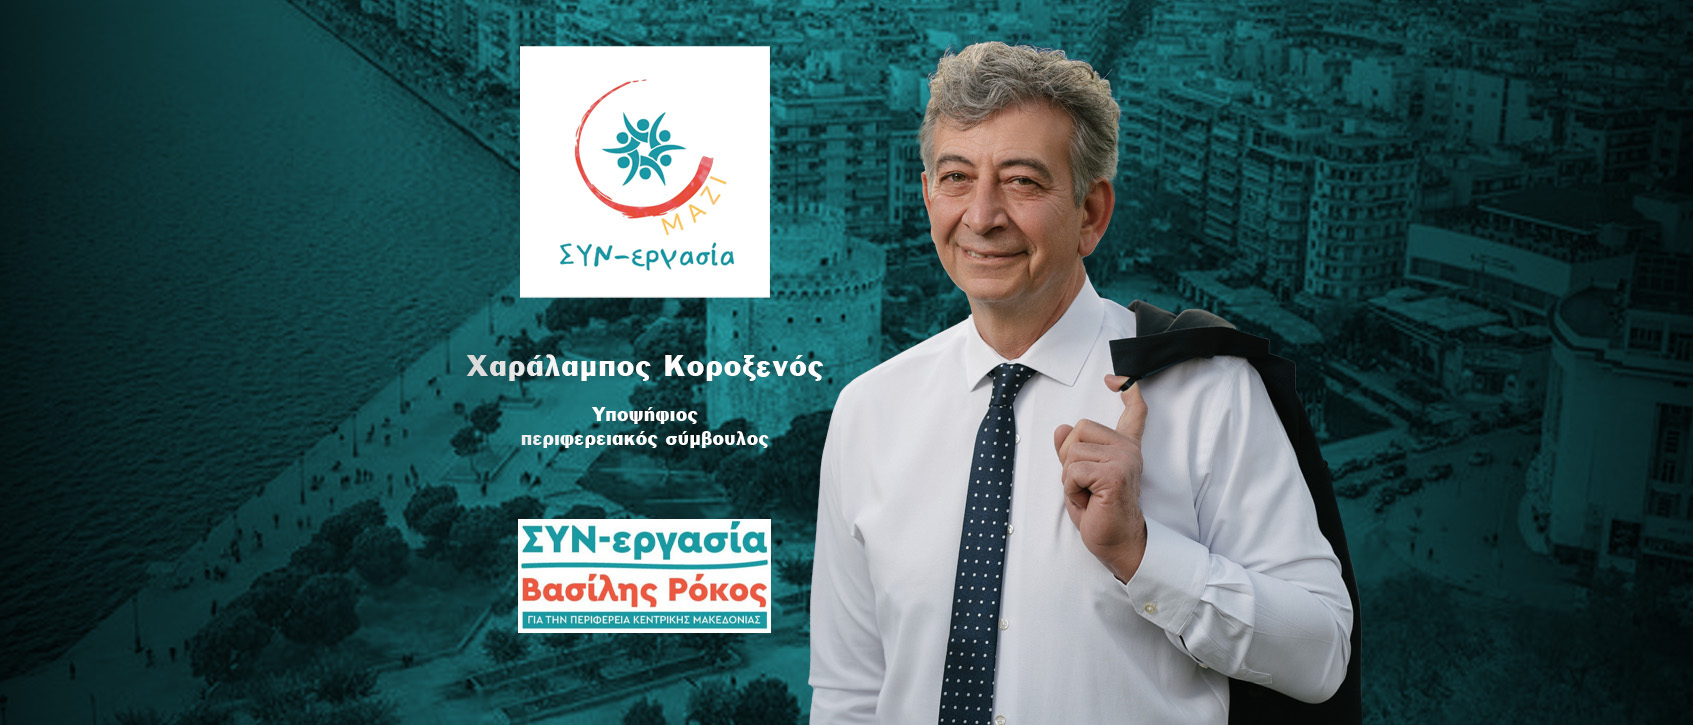 Χαράλαμπος Κοροξενός: Ο άνθρωπος της Υγείας υποψήφιος περιφερειακός σύμβουλος στην Κ.Μακεδονία με την «ΣΥΝ-εργασία» του Β.Ρόκου